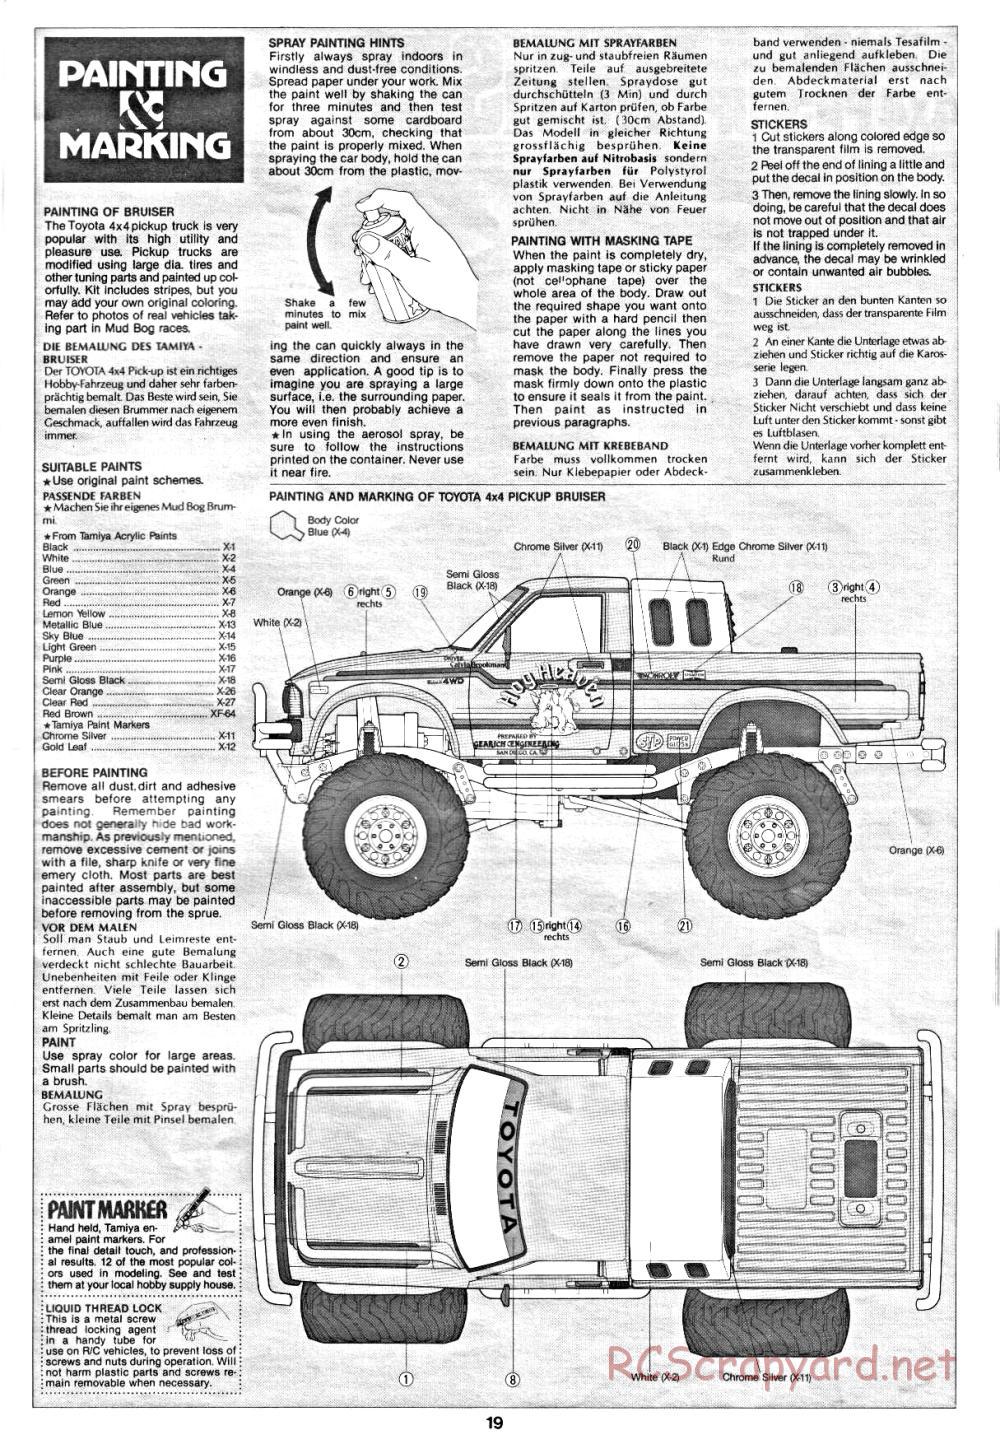 Tamiya - Toyota 4x4 Pick-Up Bruiser - 58048 - Manual - Page 19